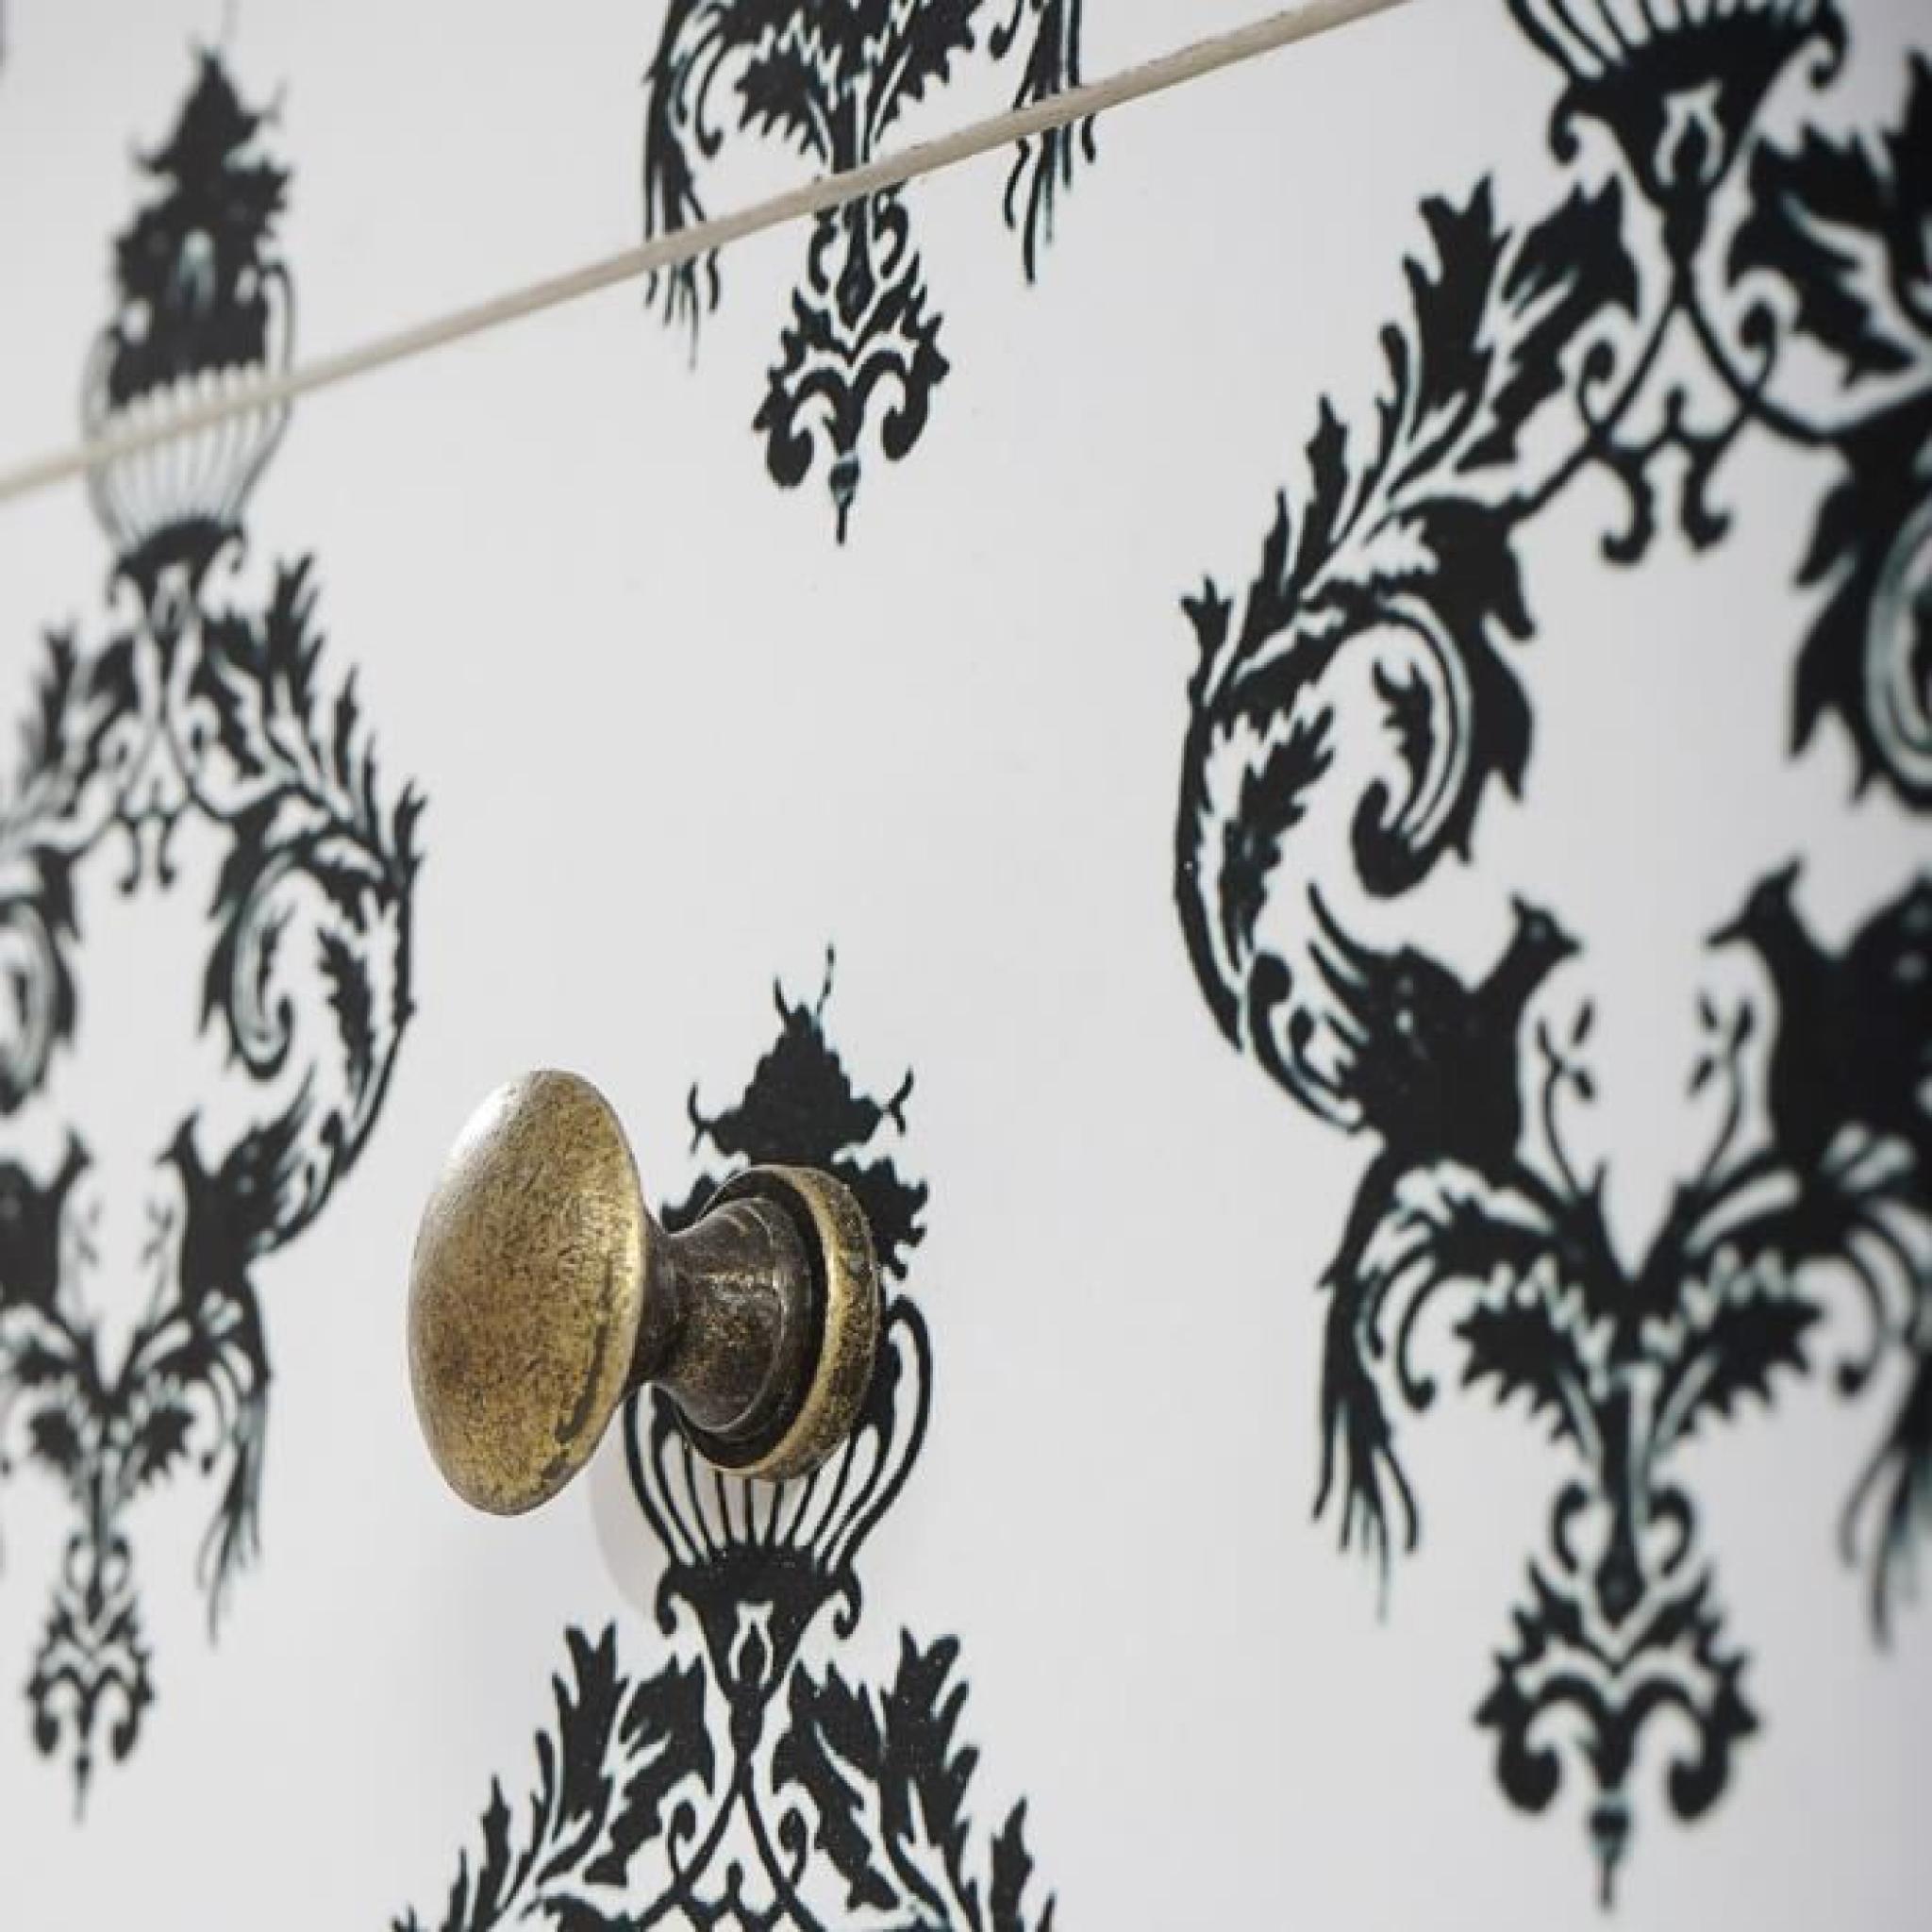 Commode Luton armoire table d'appoint chevet,66x60x33cm, motif orchidée. pas cher